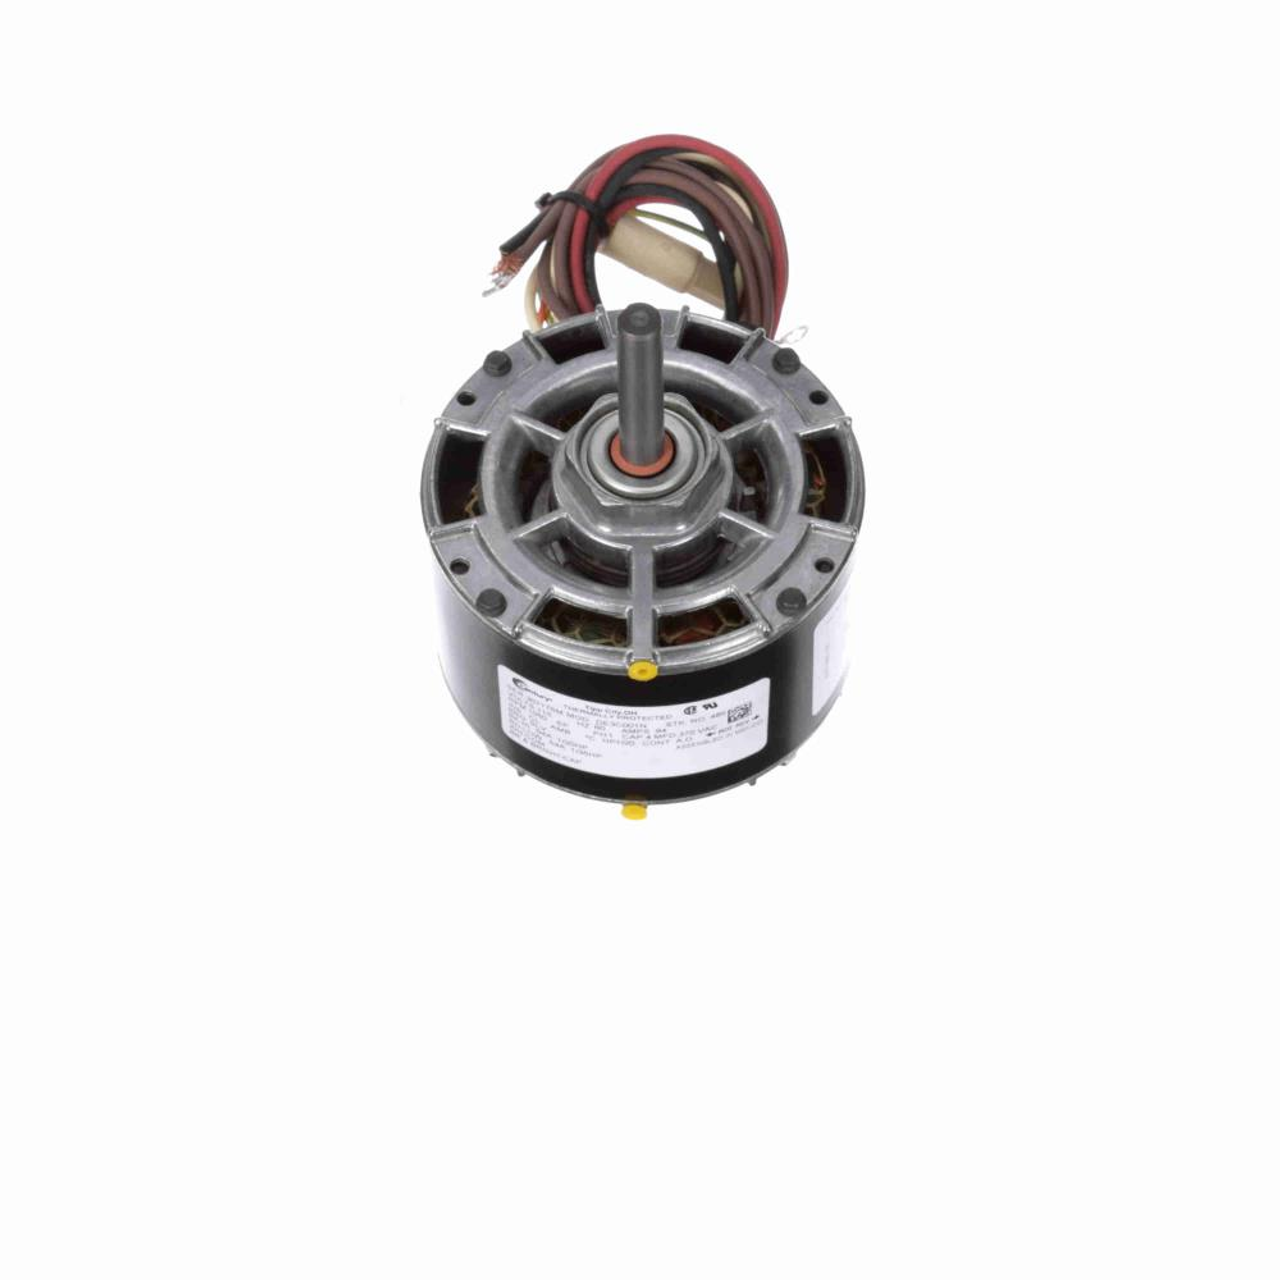 485 5 In. Diameter Single Shaft Fan/Blower Motor 1/20-1/35 HP